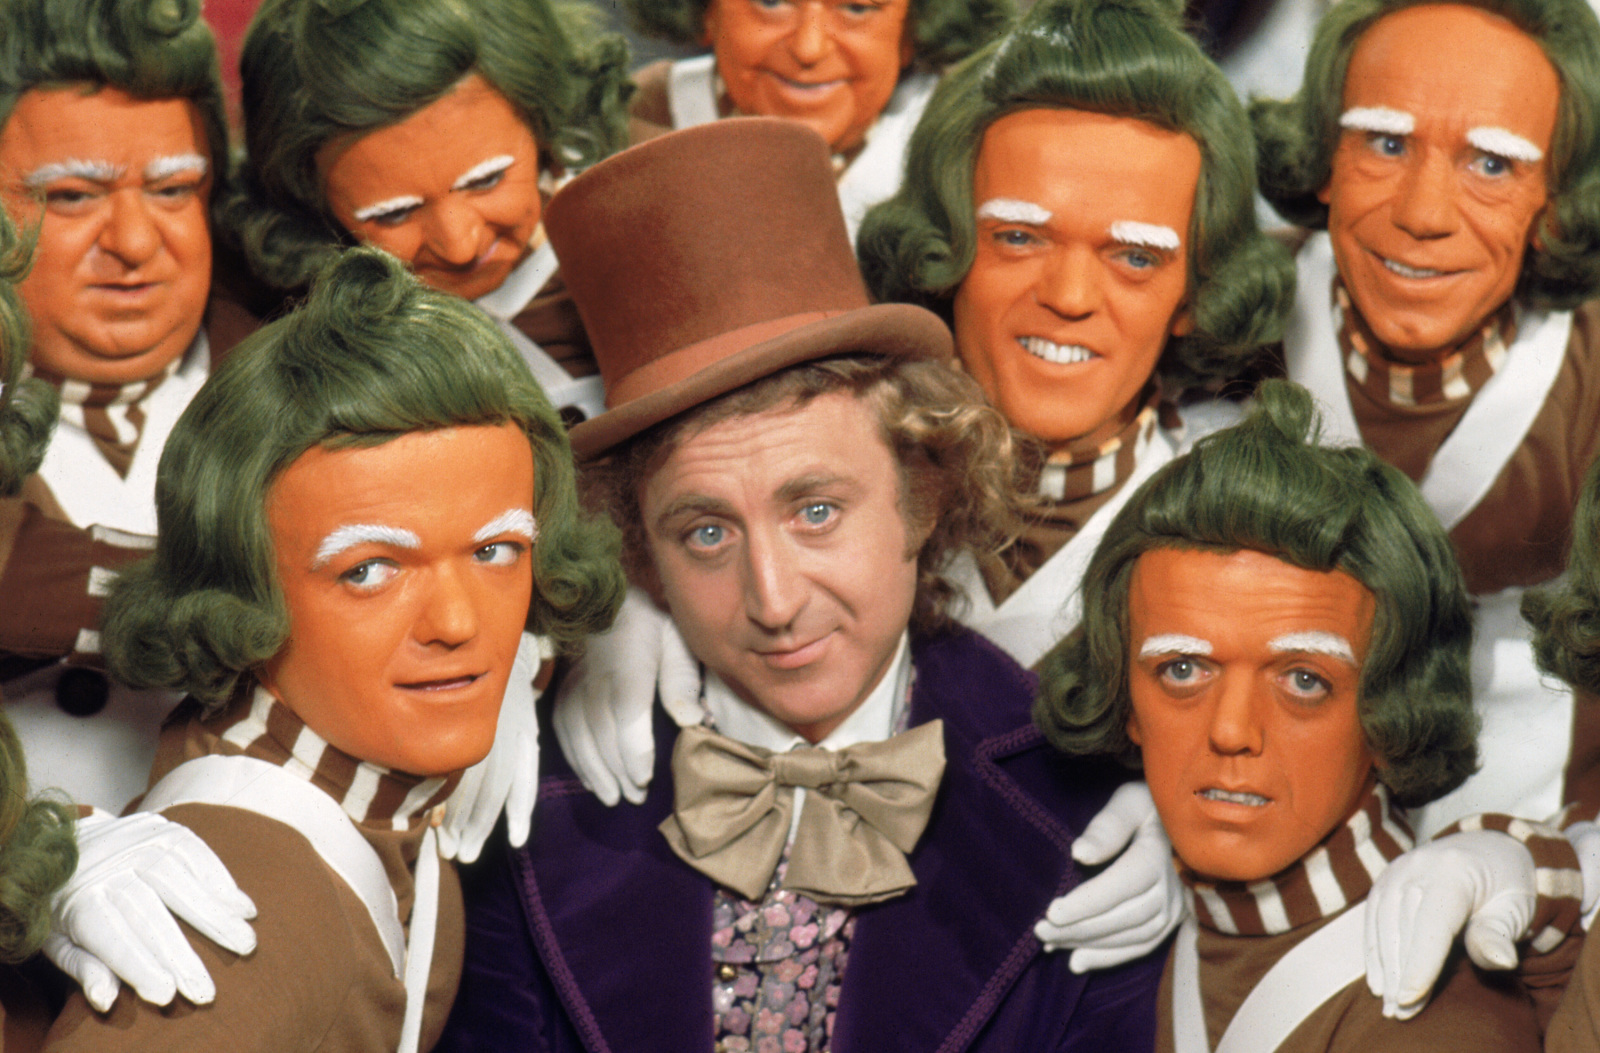 kadr z filmu Willy Wonka i Fabryka czekolady